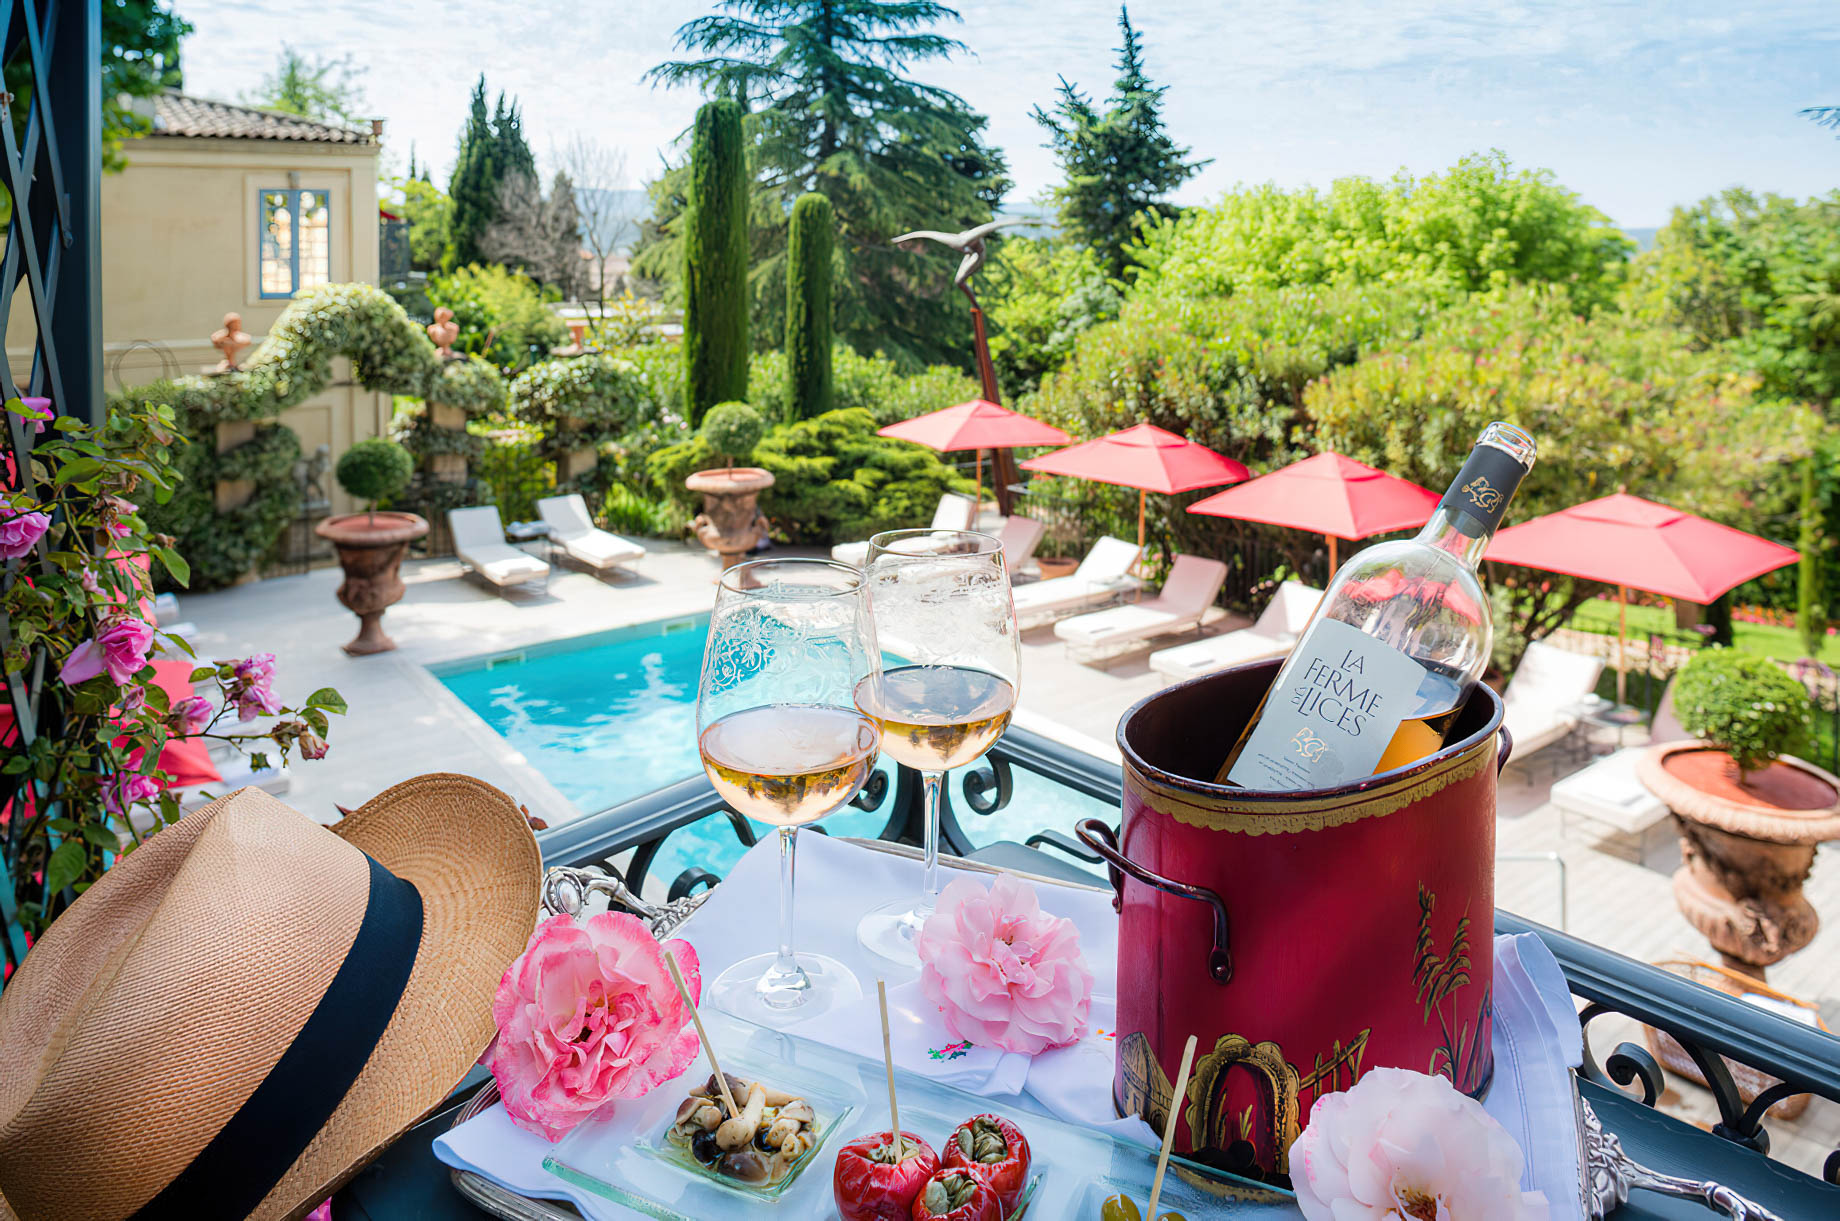 Villa Gallici Relais Châteaux Hotel – Aix-en-Provence, France – Pool View Dining Terrace